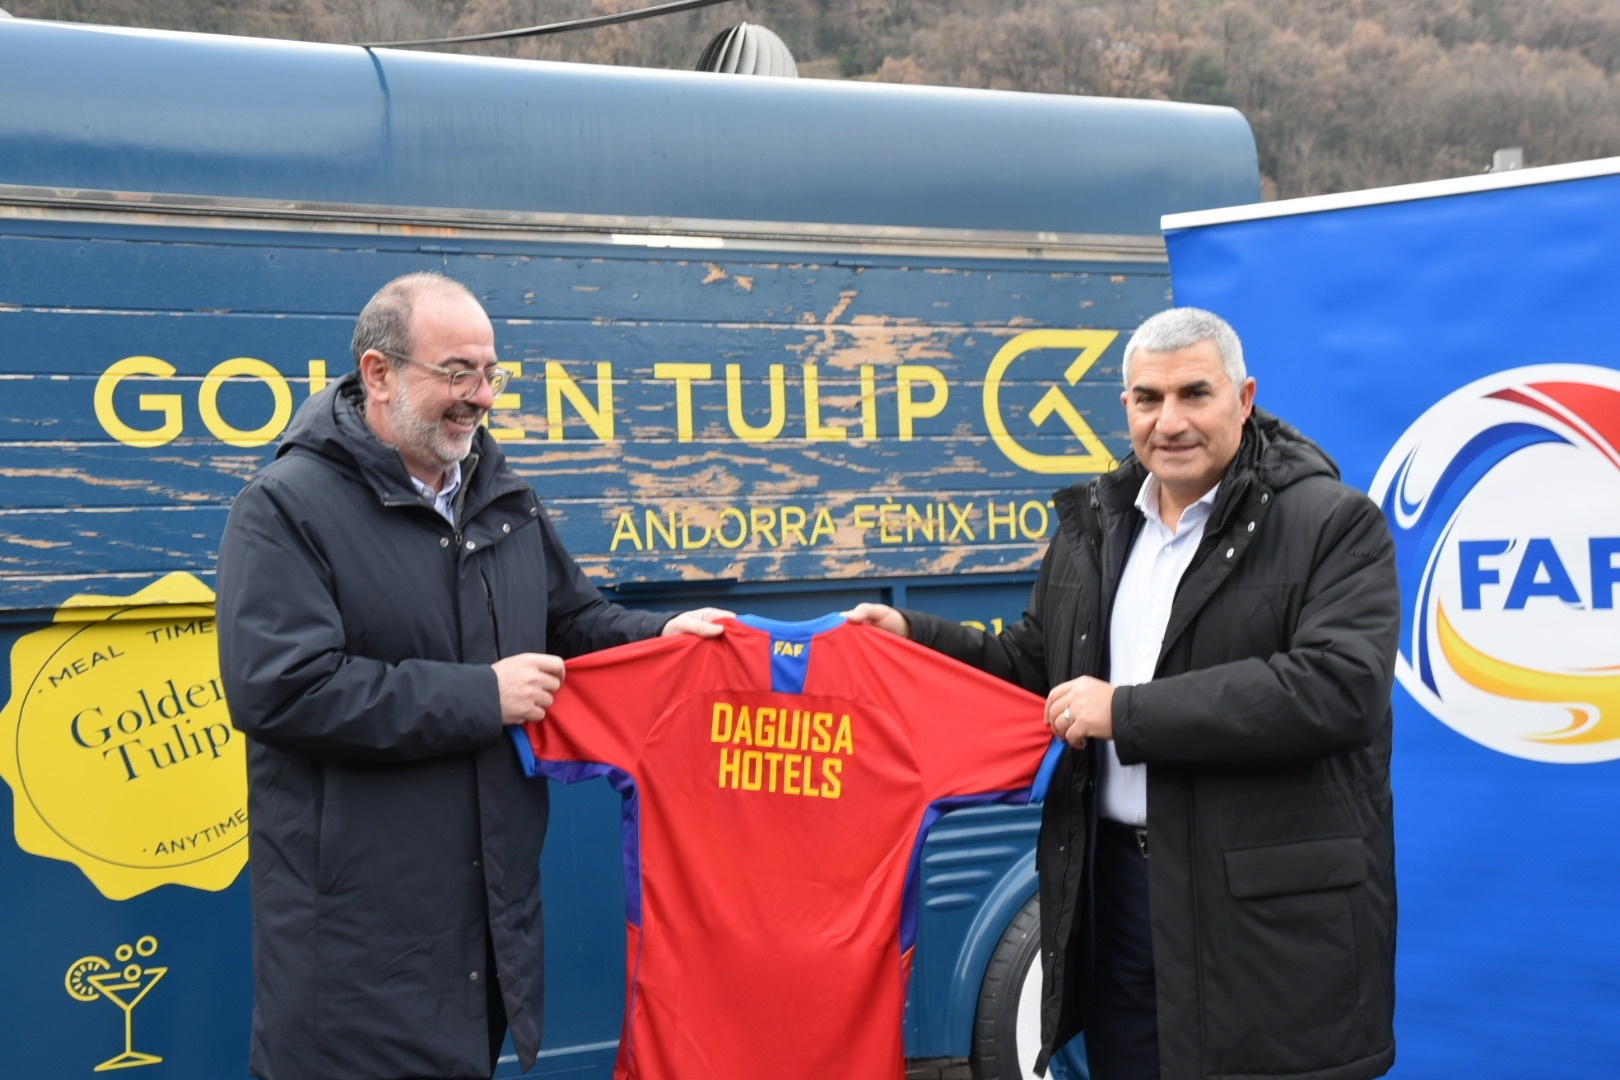 Daguisa Hotels torna-se o novo patrocinador oficial da Federação Andorrana de Futebol